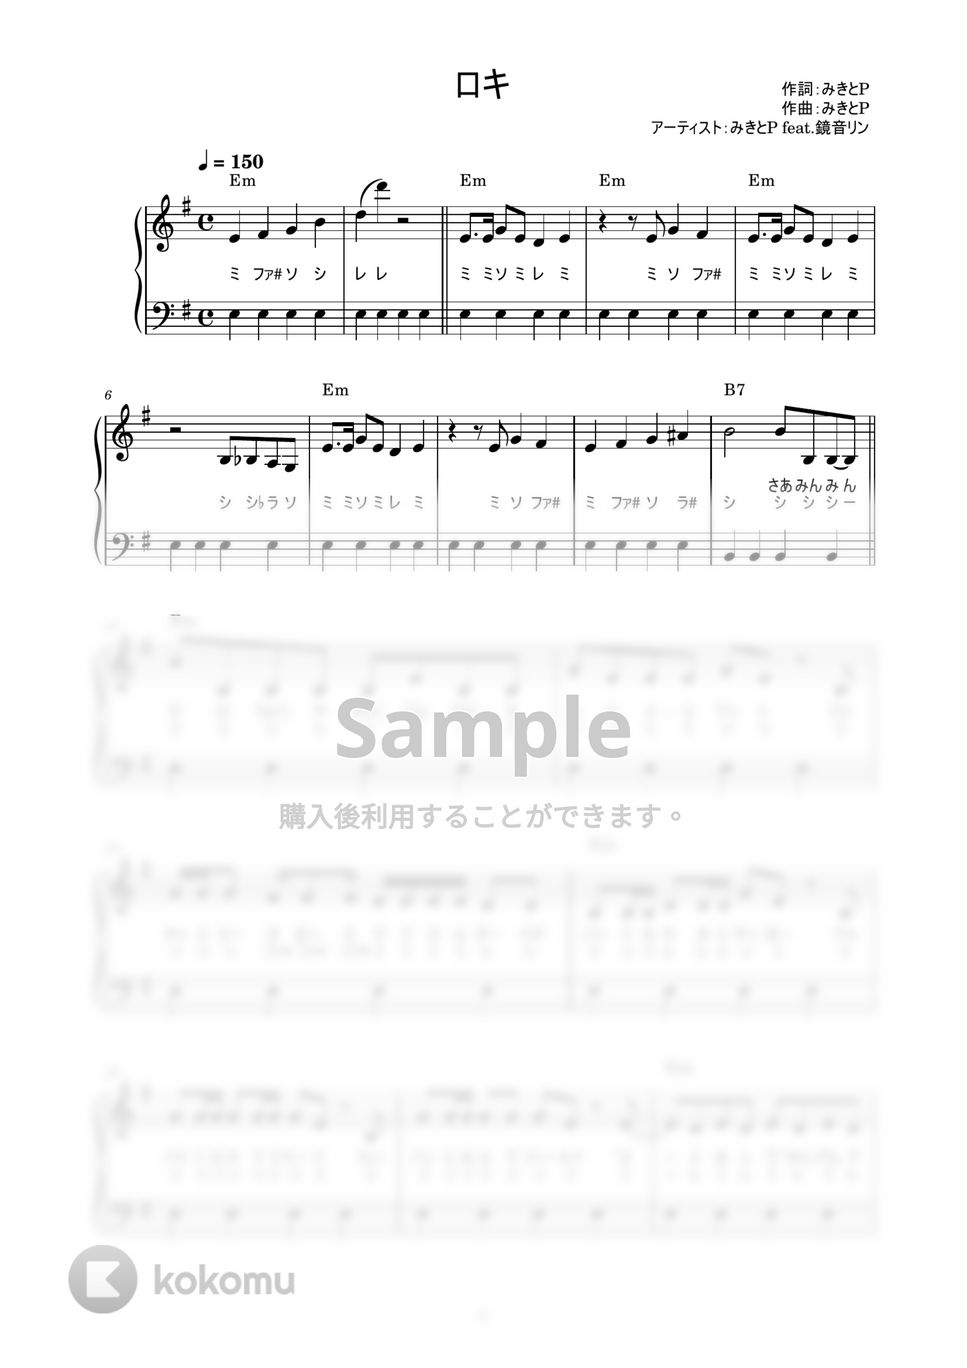 みきとP feat.鏡音リン - ロキ (かんたん / 歌詞付き / ドレミ付き / 初心者) by piano.tokyo